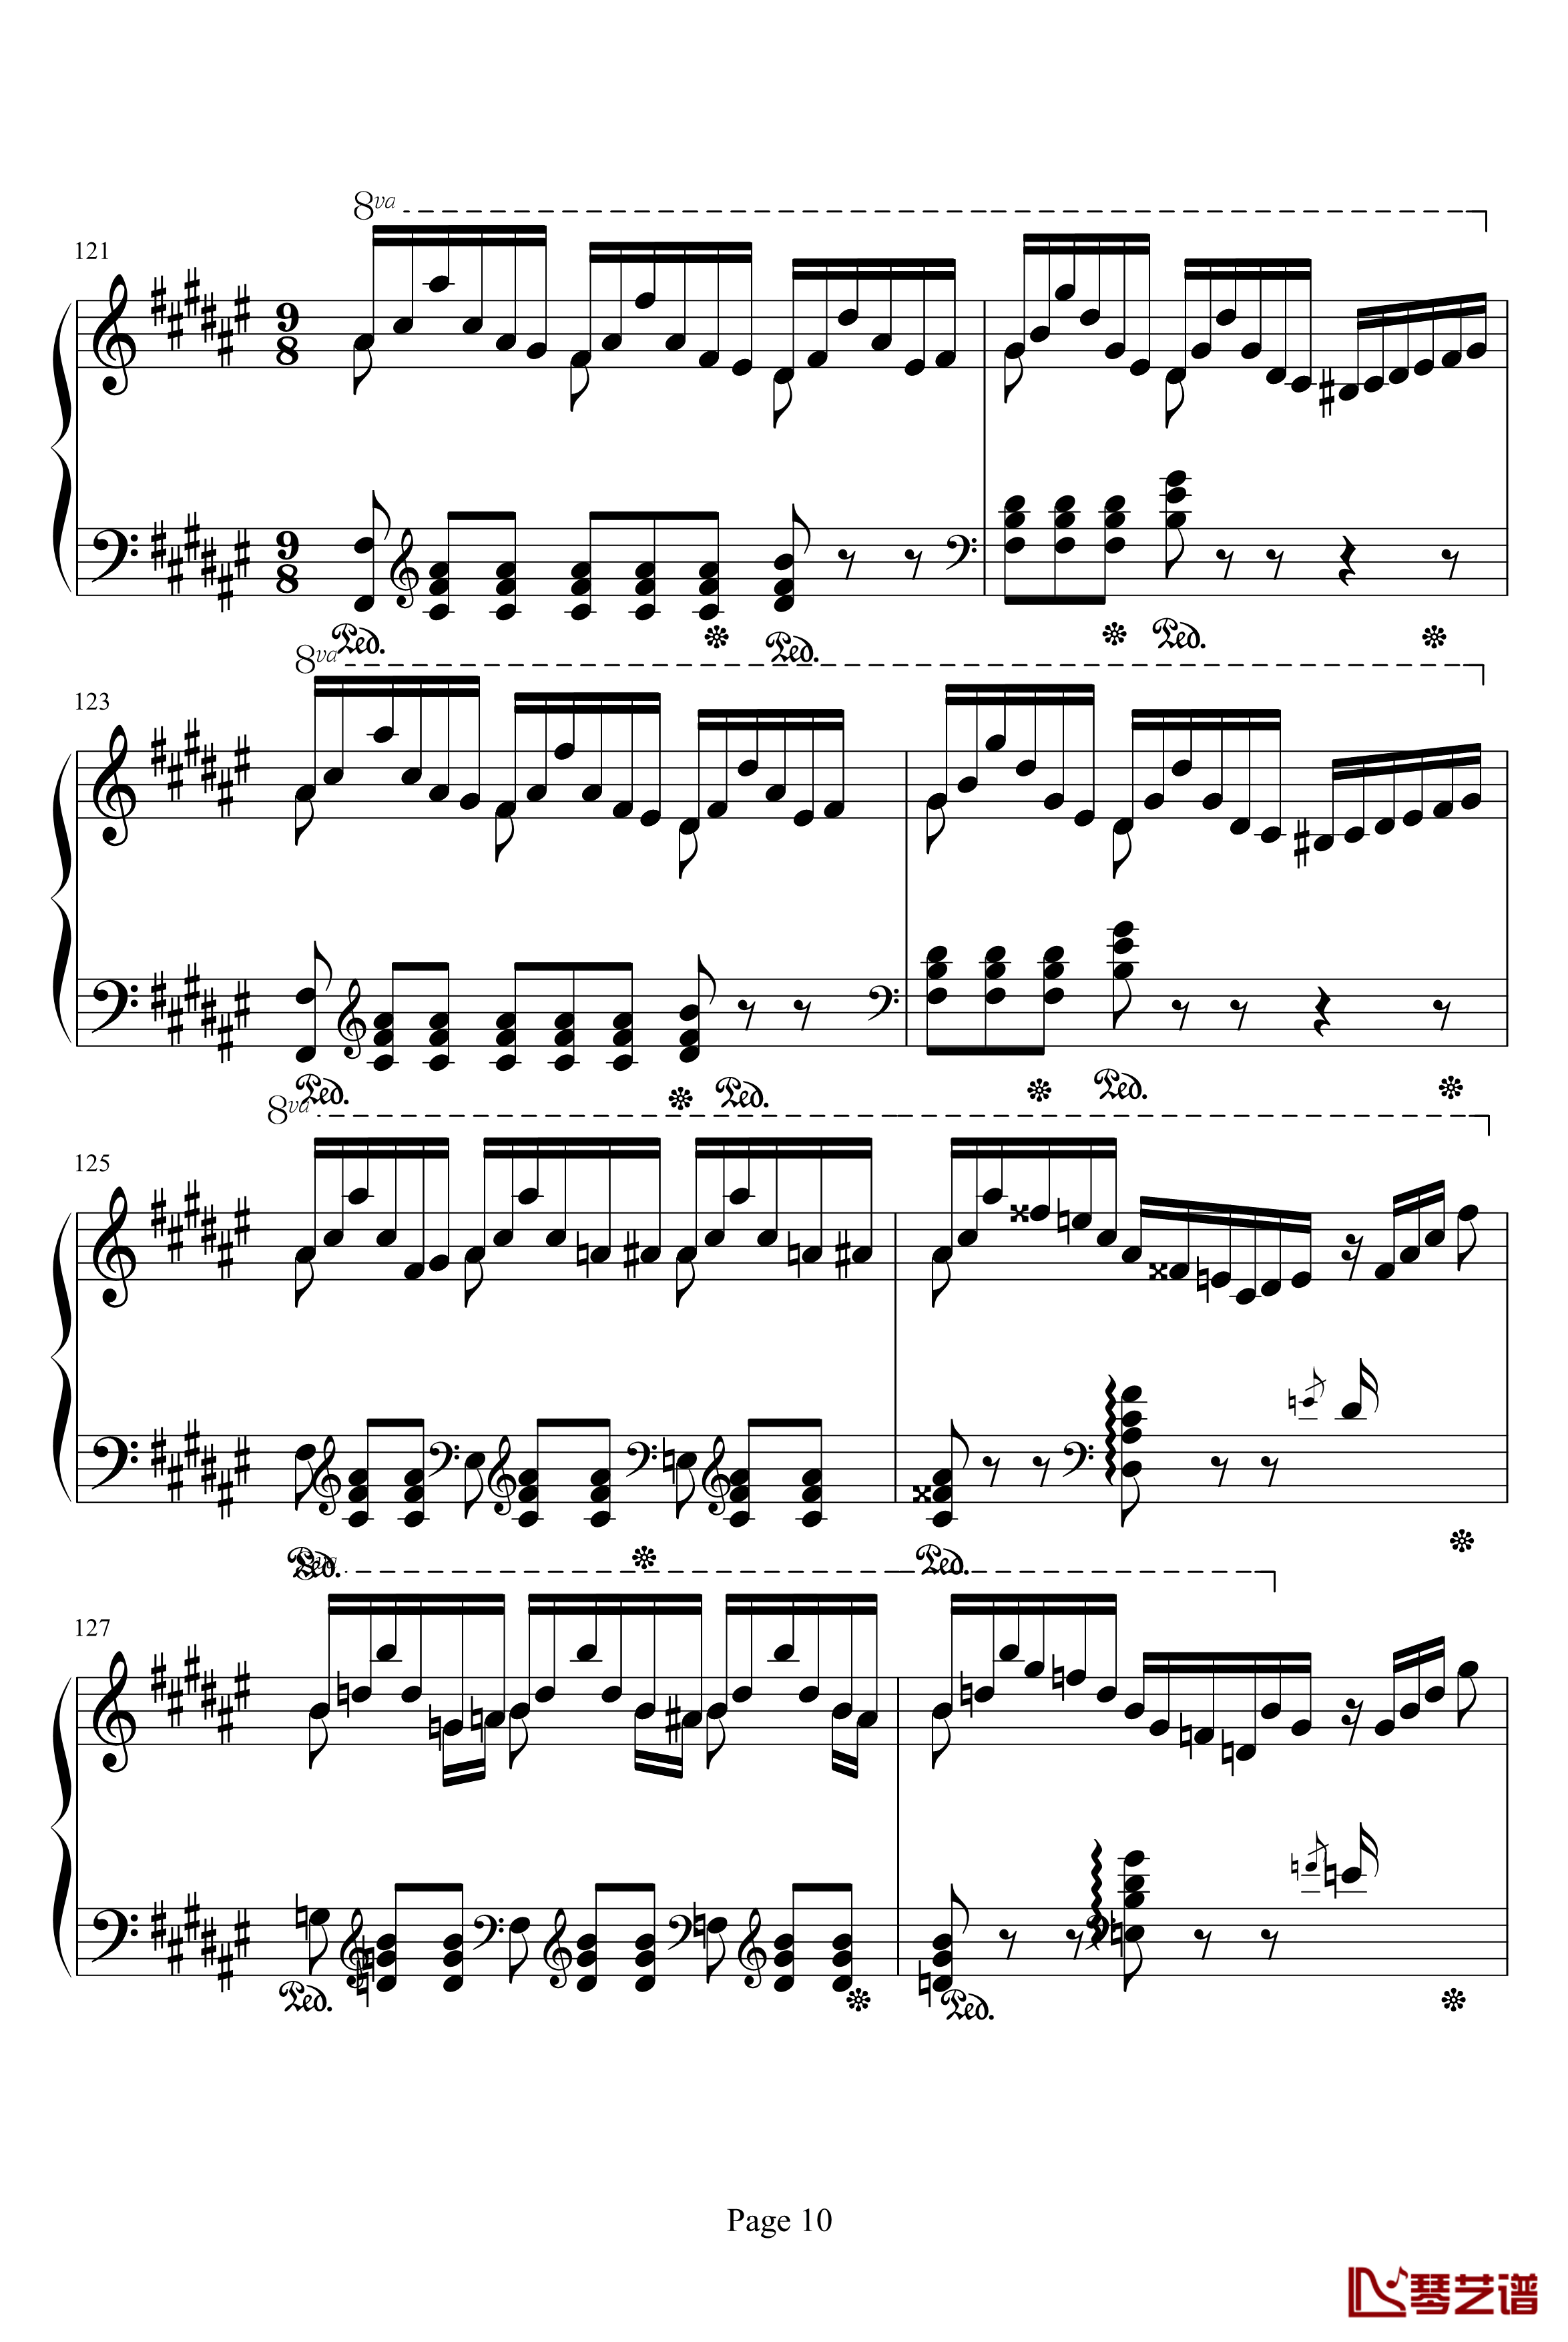 李斯特音乐会练习曲之二钢琴谱-侏儒之舞-李斯特10